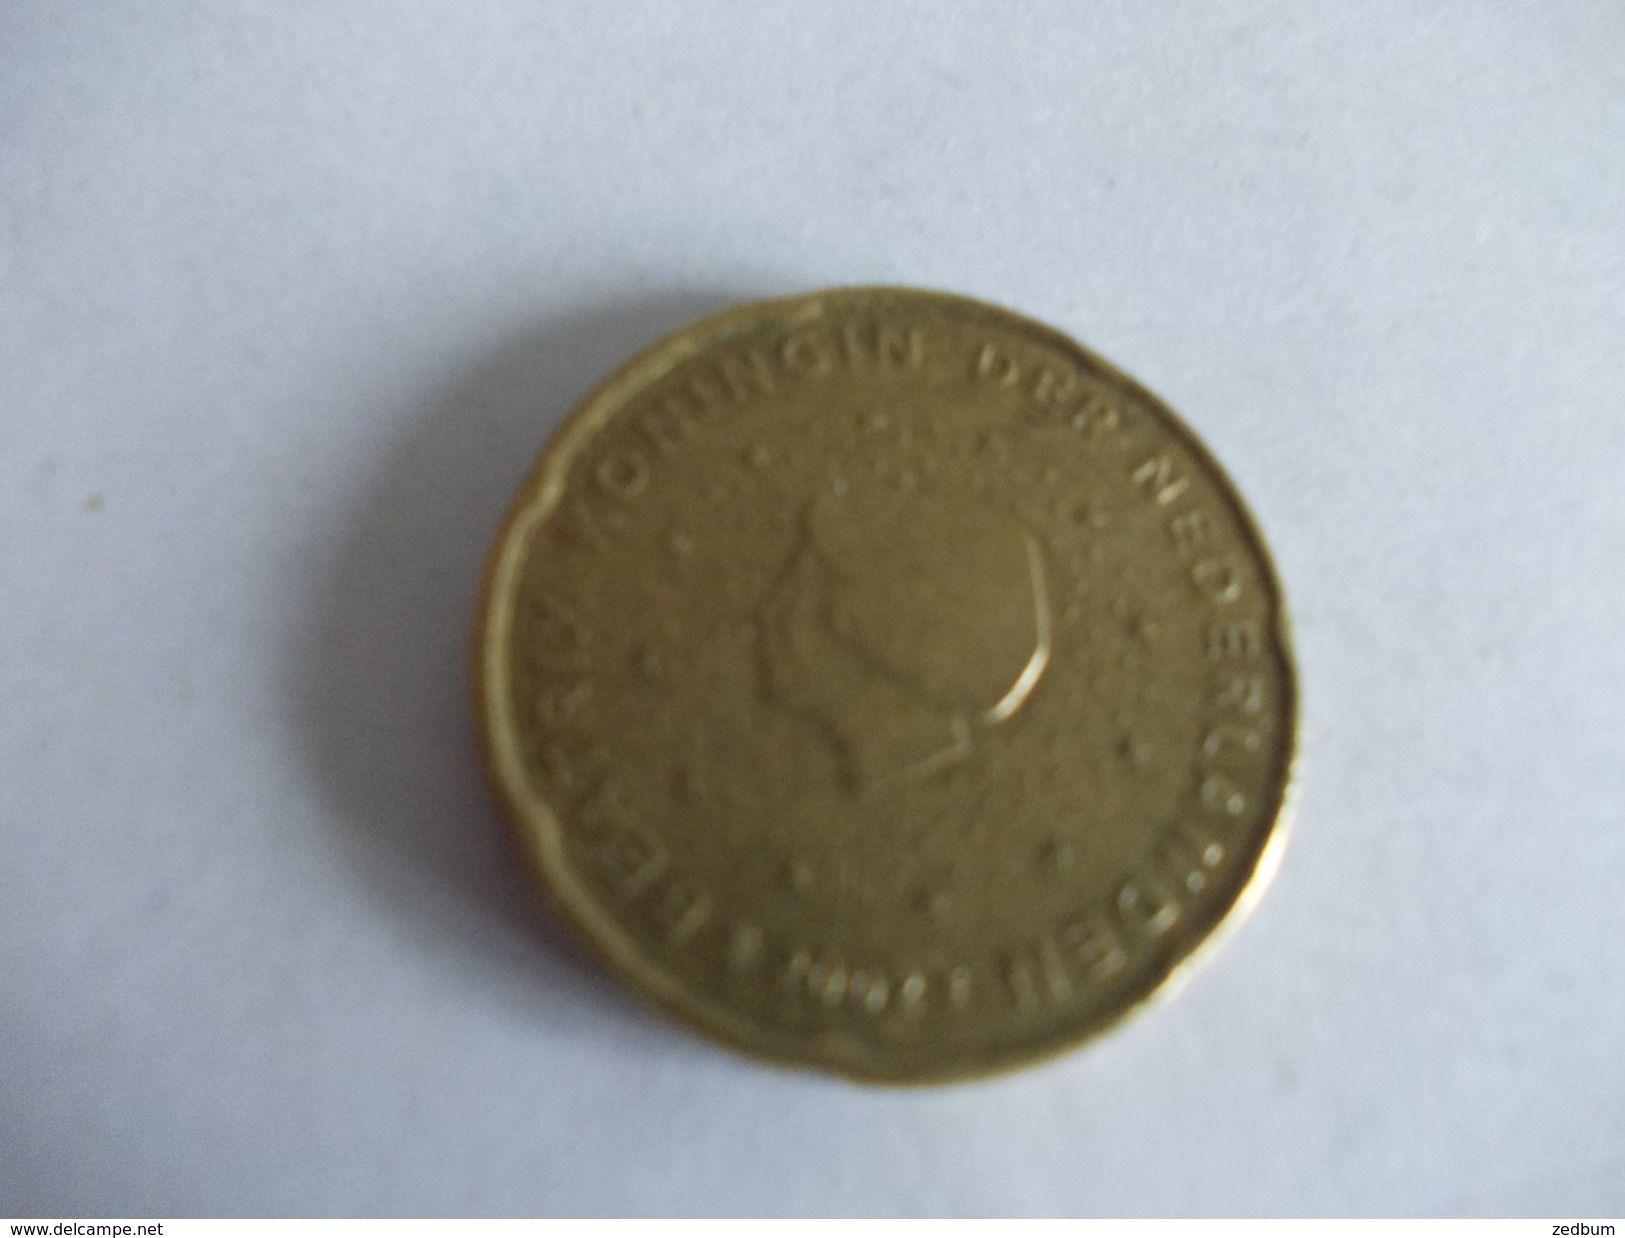 Monnaie Pièce De 20 Centimes D' Euro De Pays Bas Année 2002 Valeur Argus 1 &euro; - Pays-Bas